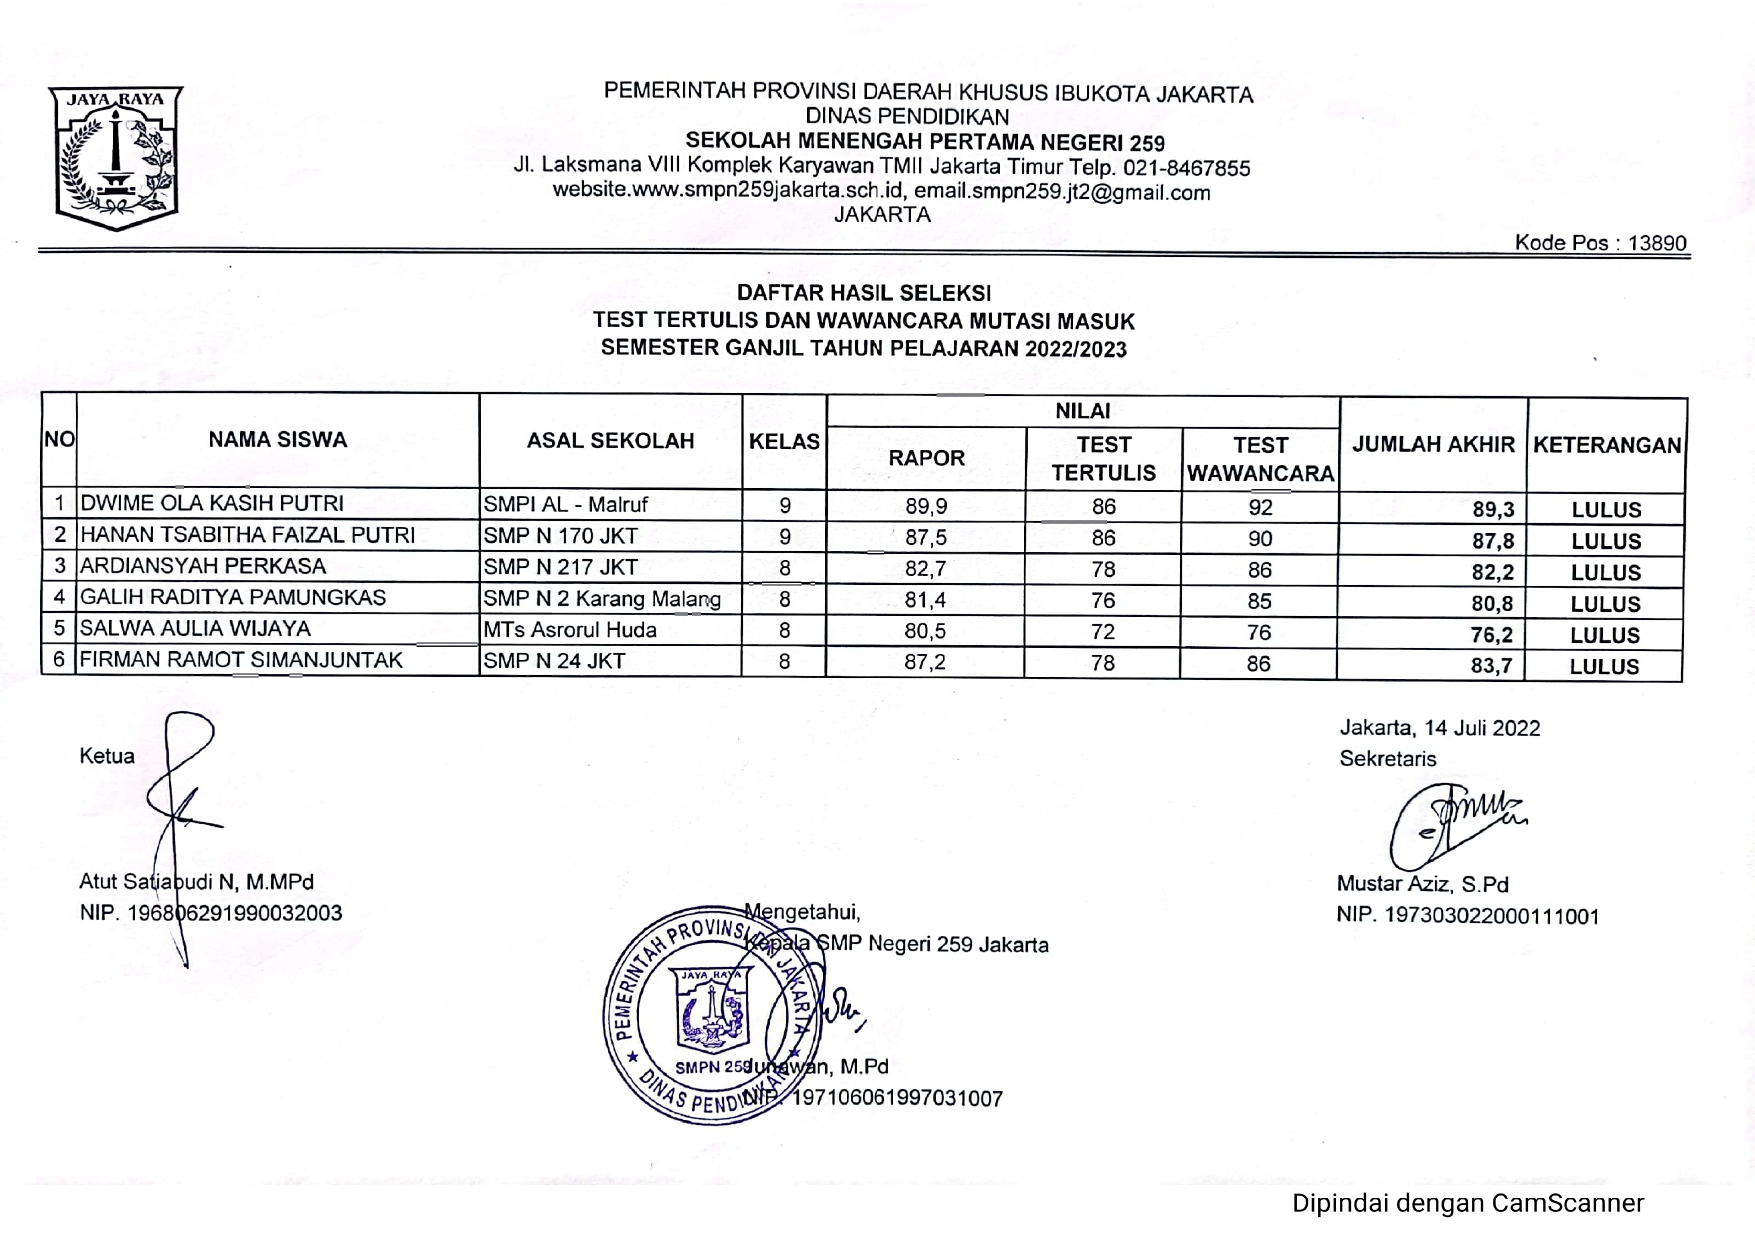 Hasil Seleksi Test Tertulis dan Wawancara Mutasi Masuk Semester Ganjil Tahun Pelajaran 2022/2023 SMPN 259 Jakarta